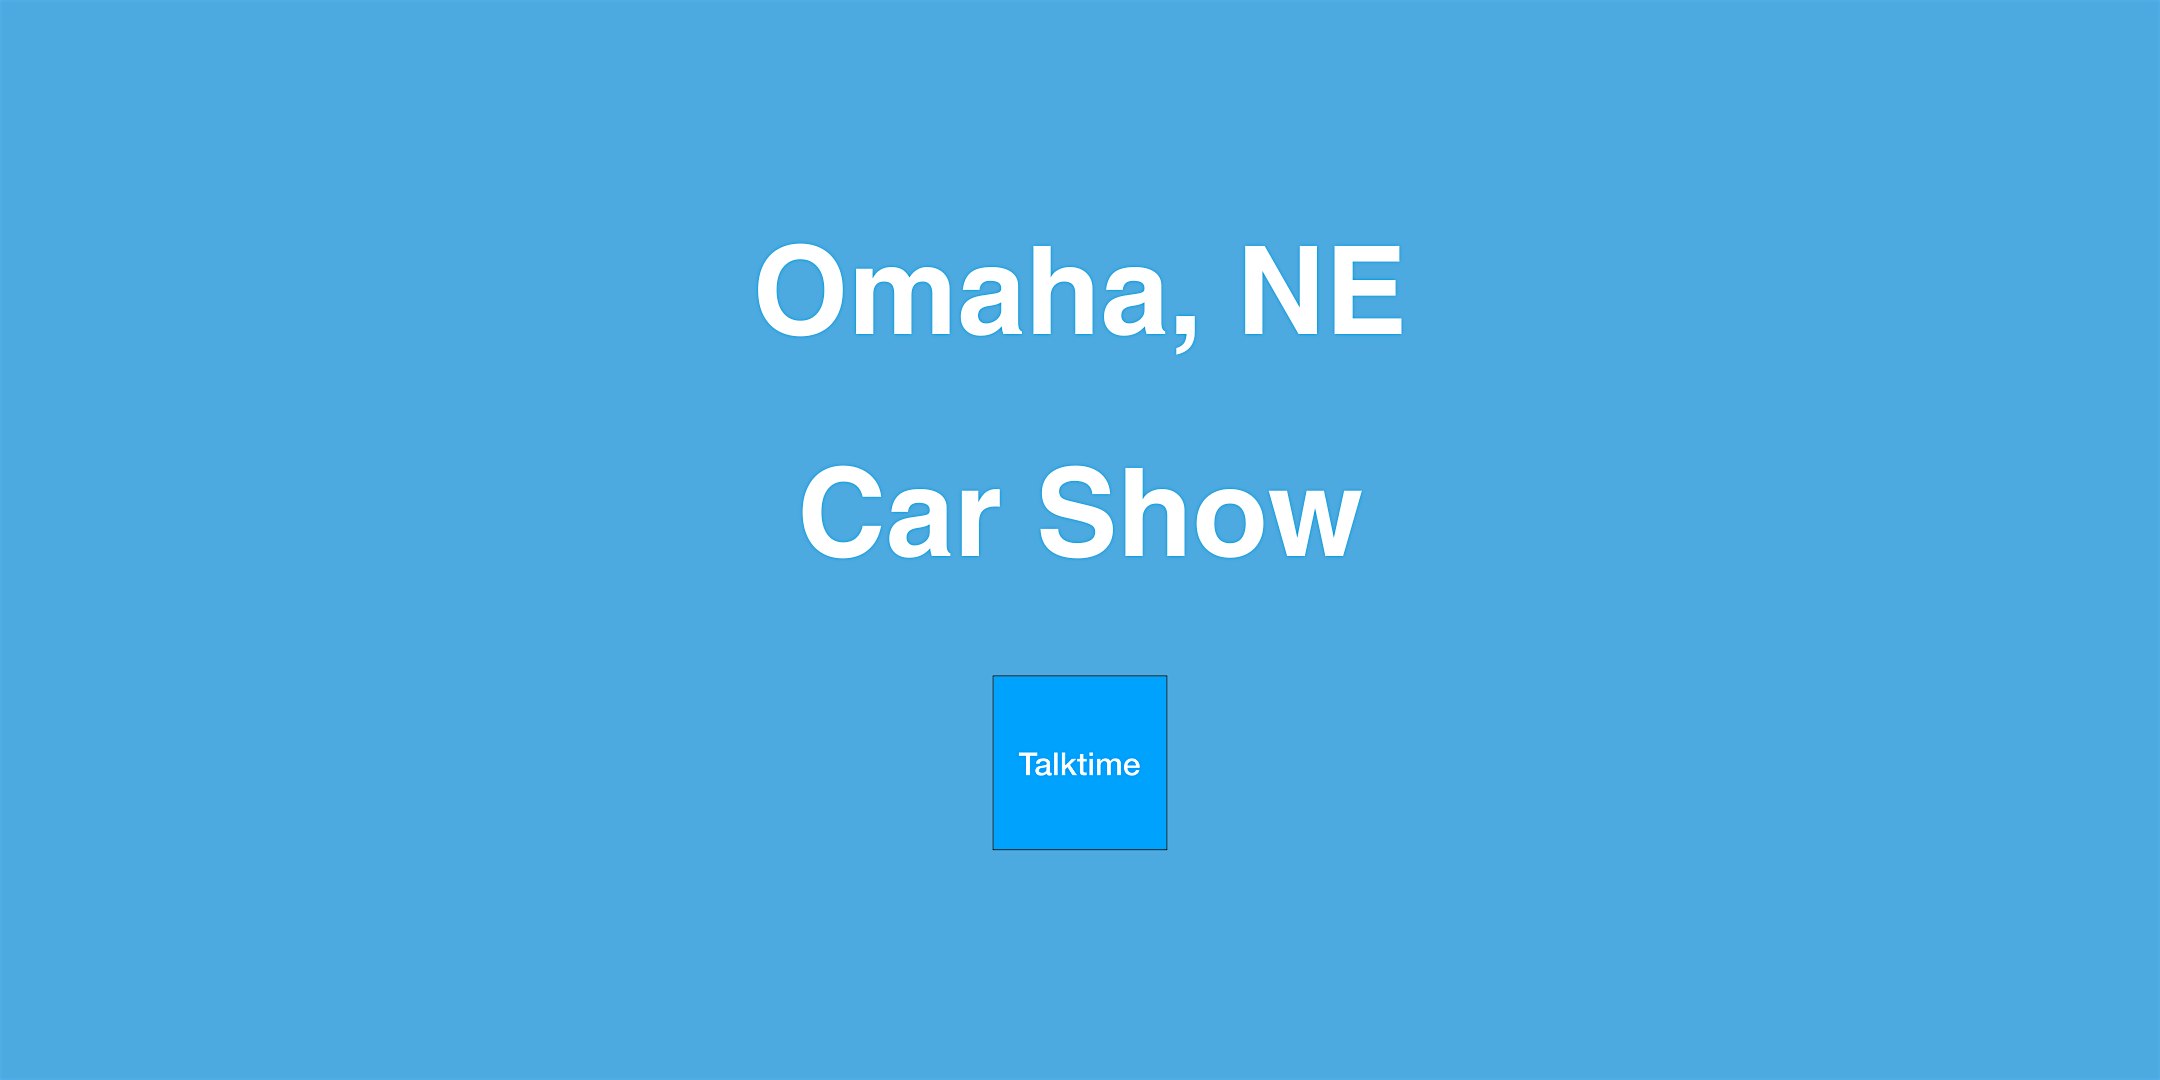 Car Show - Omaha